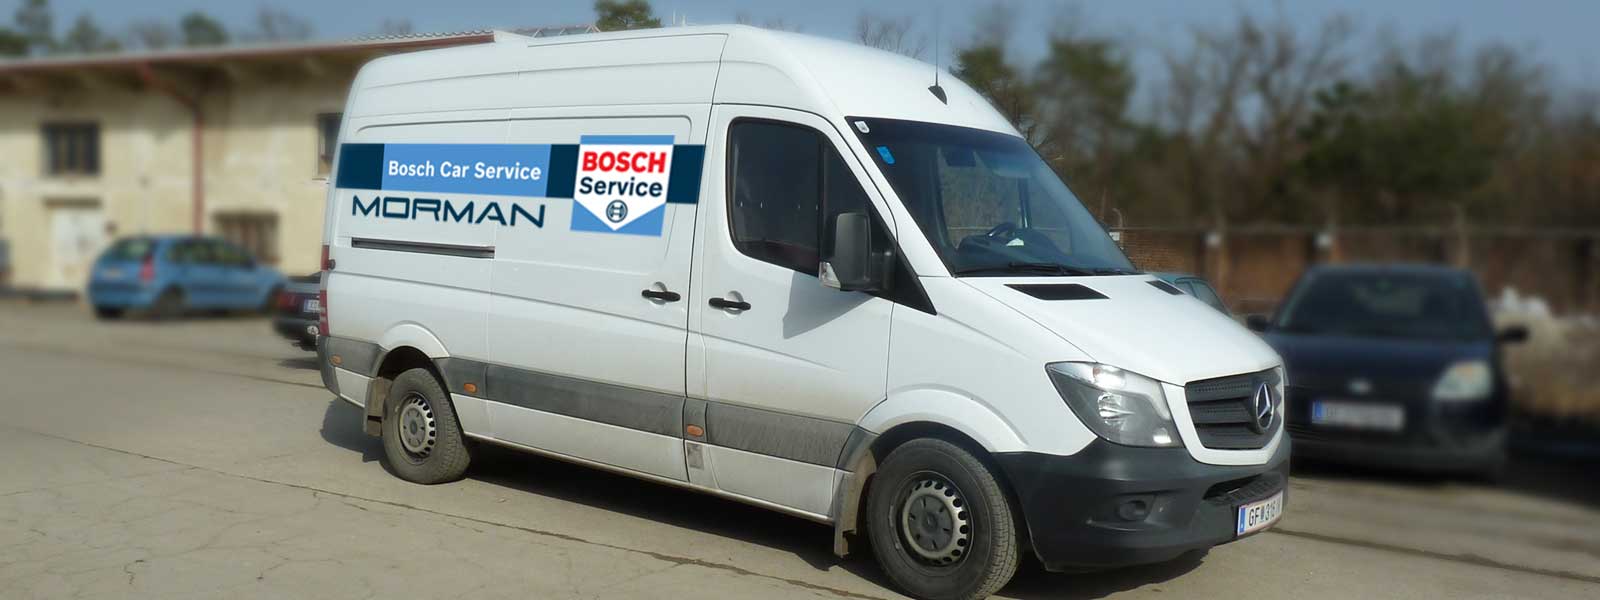 Morman Bosch Service Mobiler Service